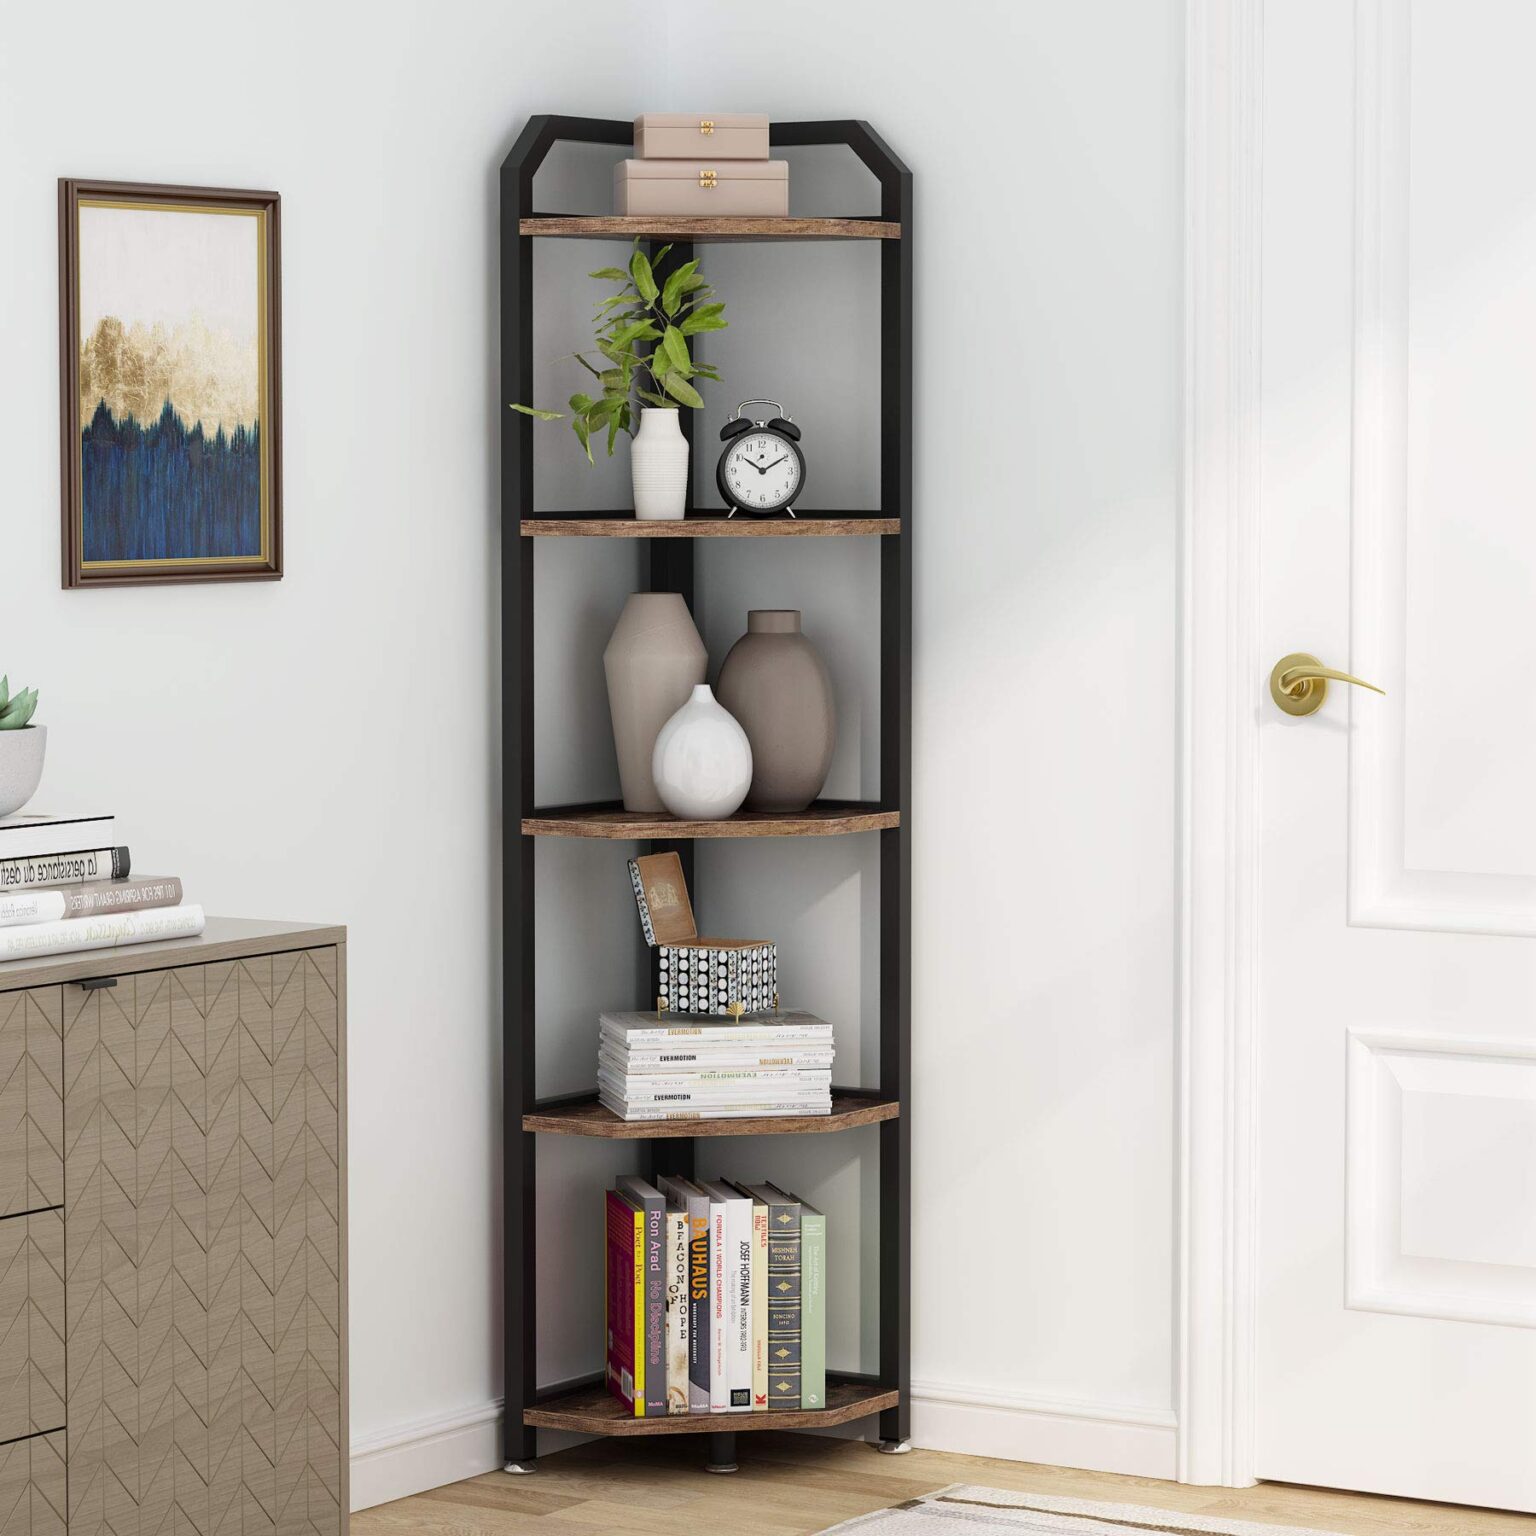 Bookshelf Corner Design 2022 1536x1536 